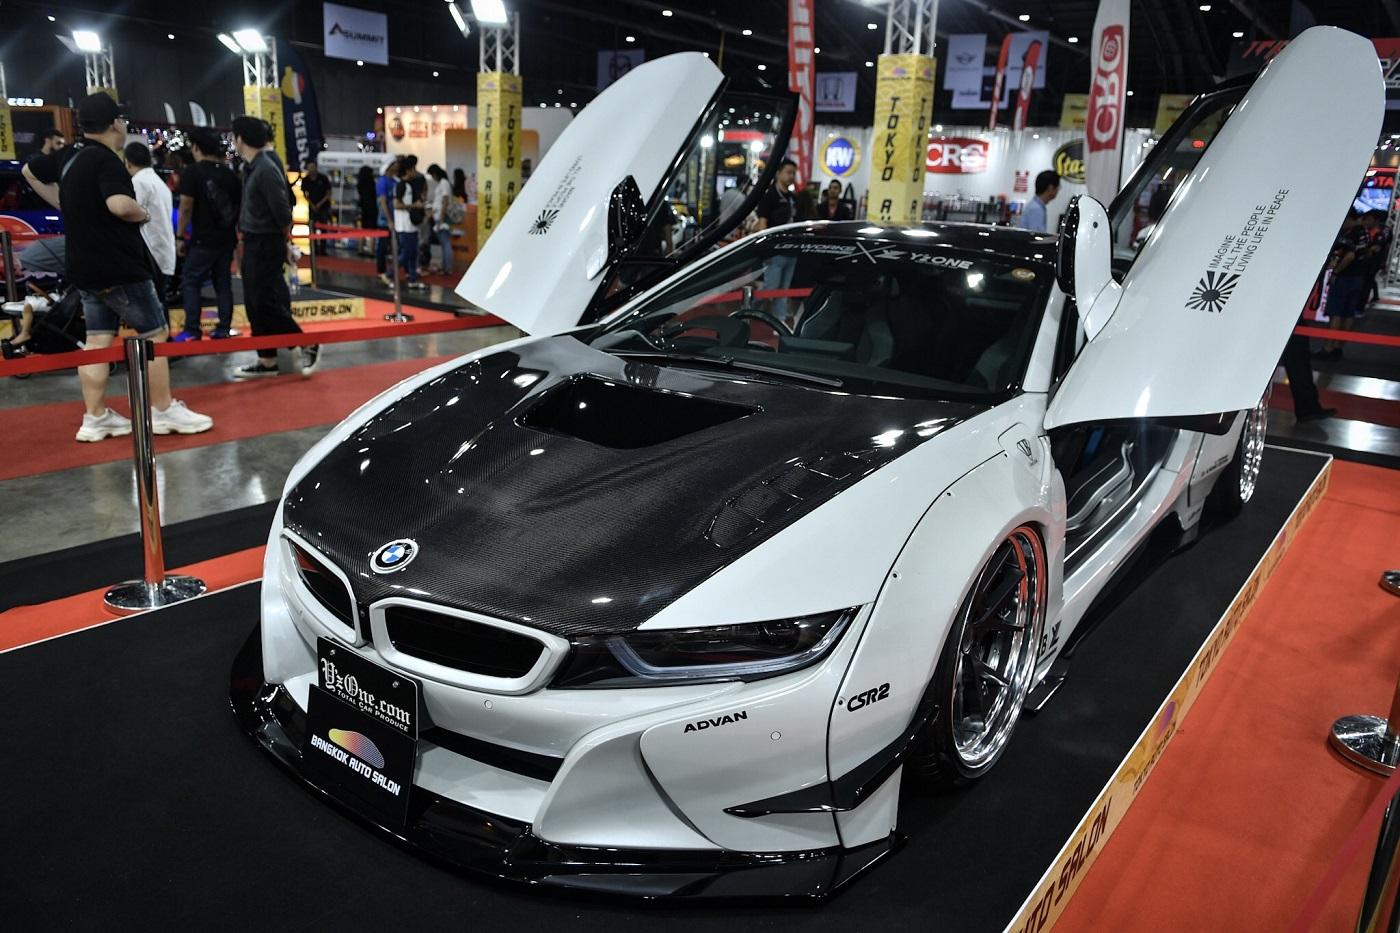 8 รถแต่งตัวโหดประจำงาน Auto Salon 2019 ส่งตรงความตื่นตาจากญี่ปุ่น